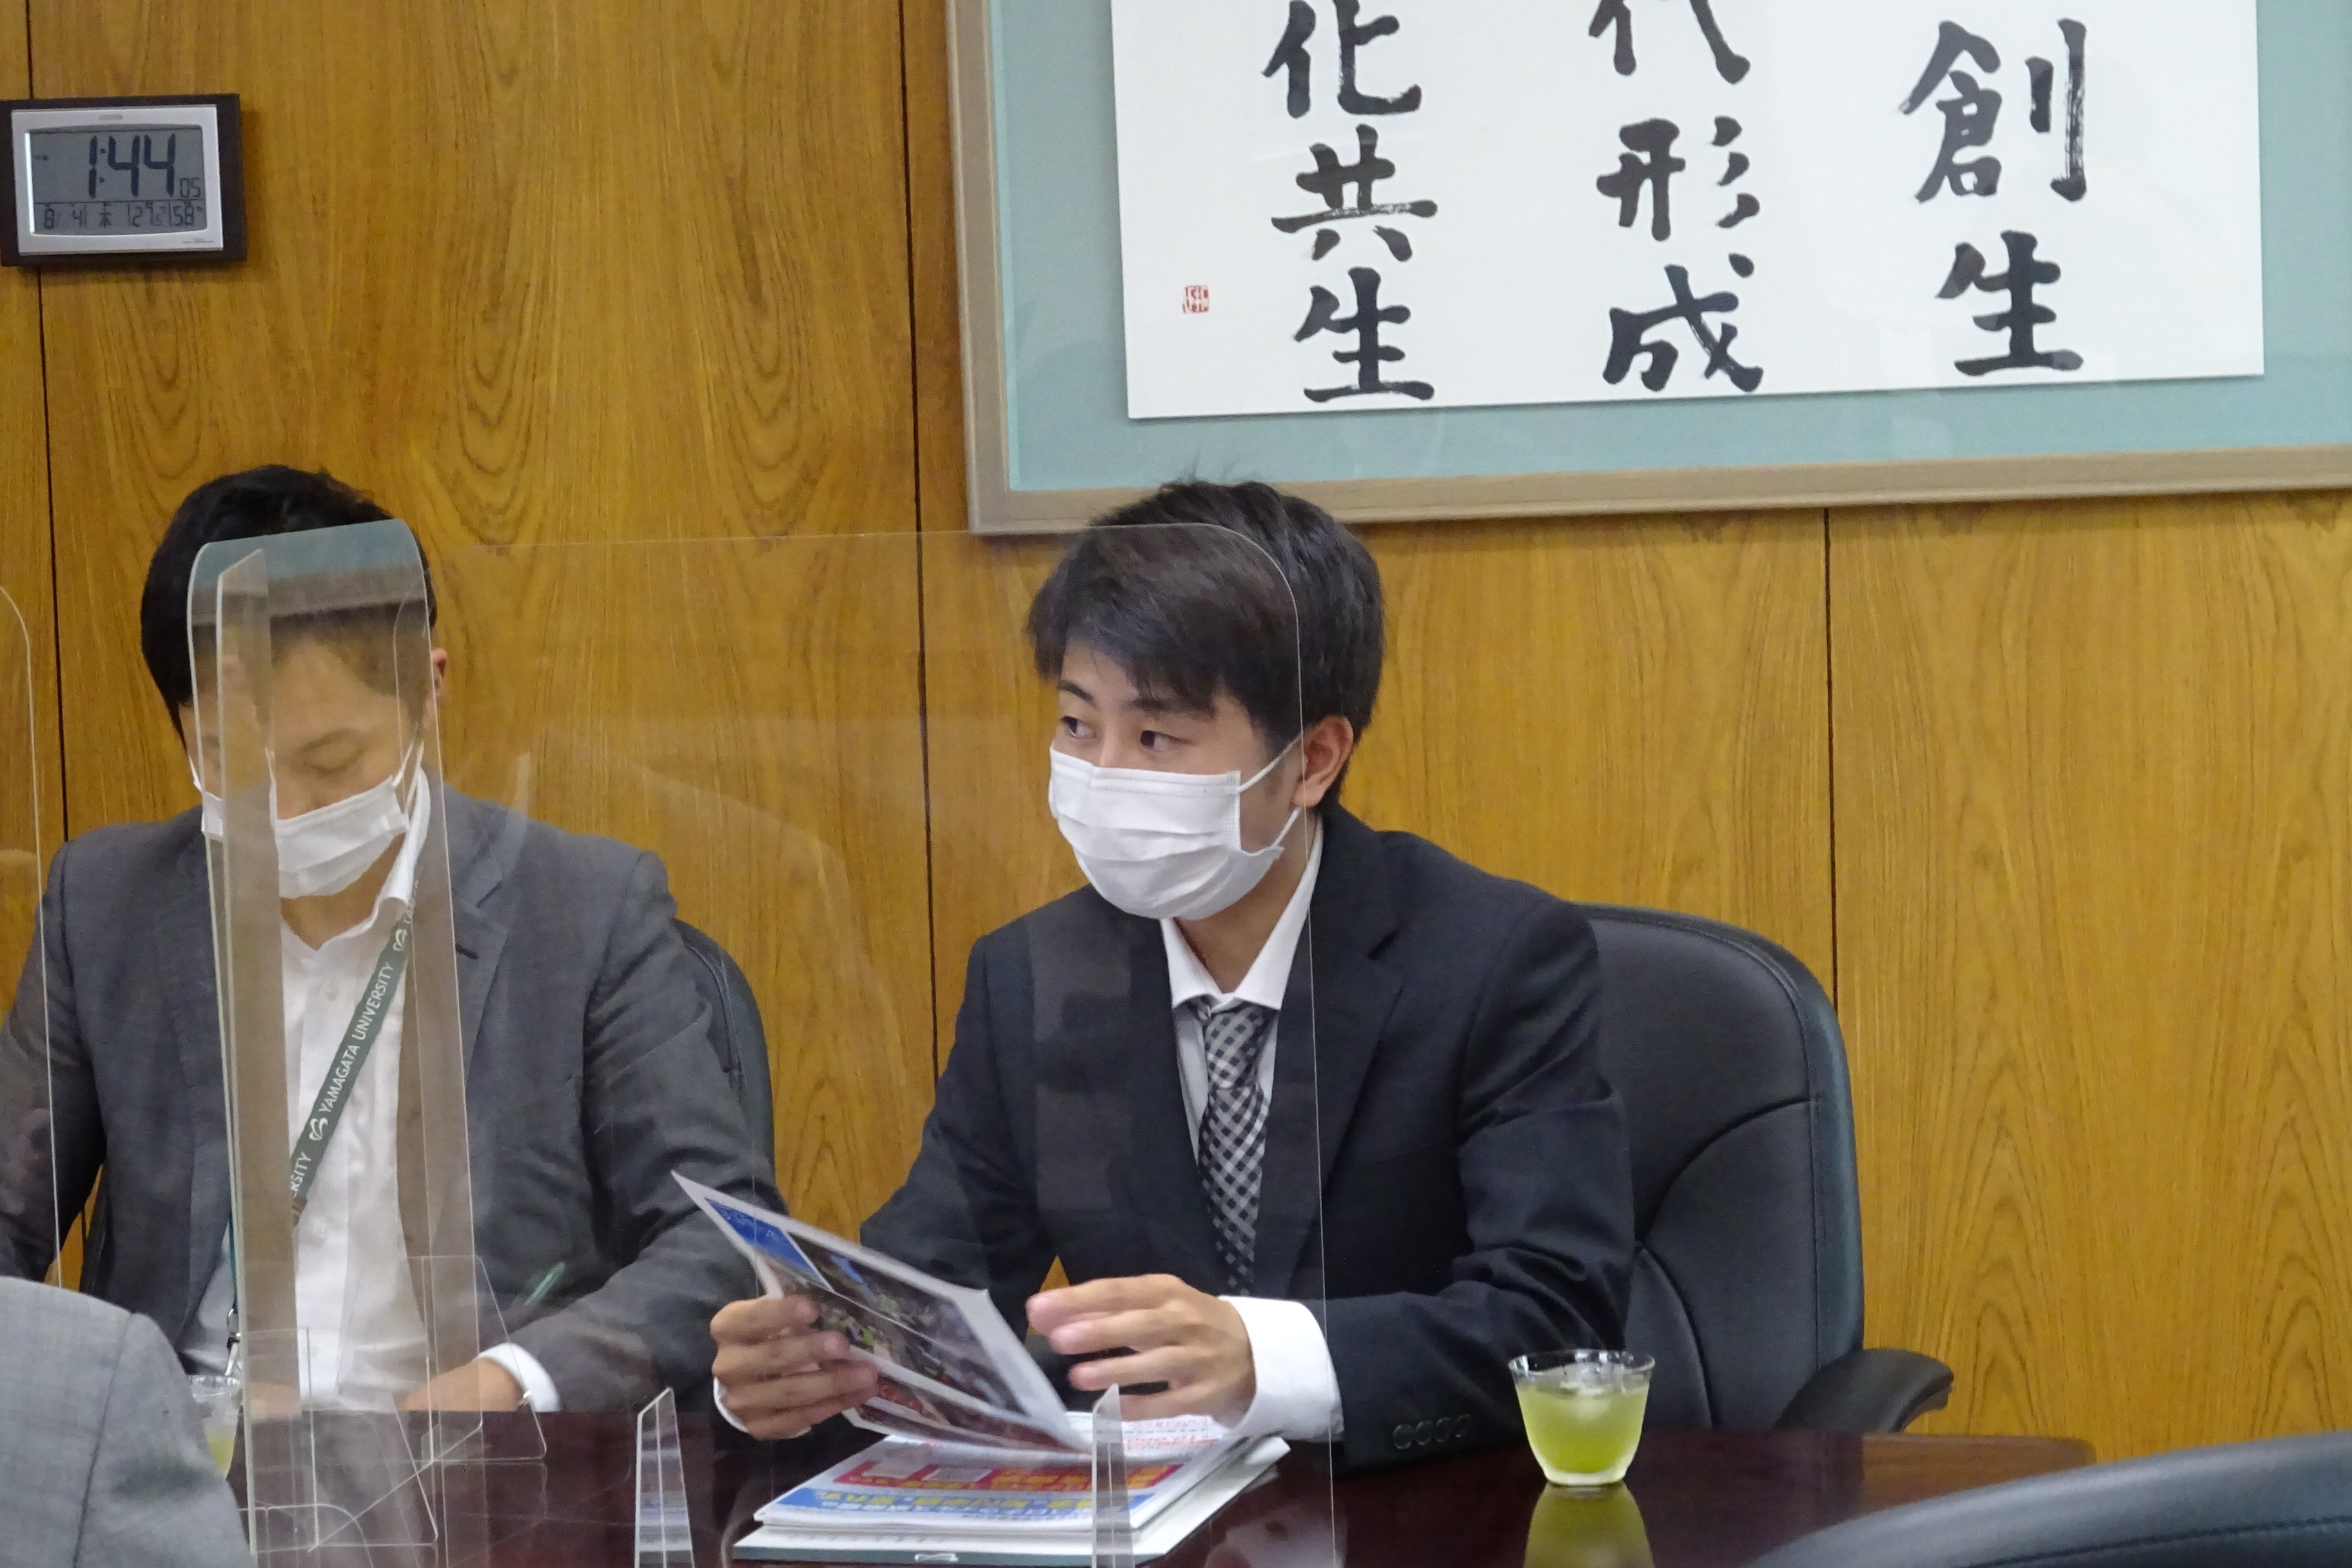 学生委員会について説明する鈴木学生委員長の画像